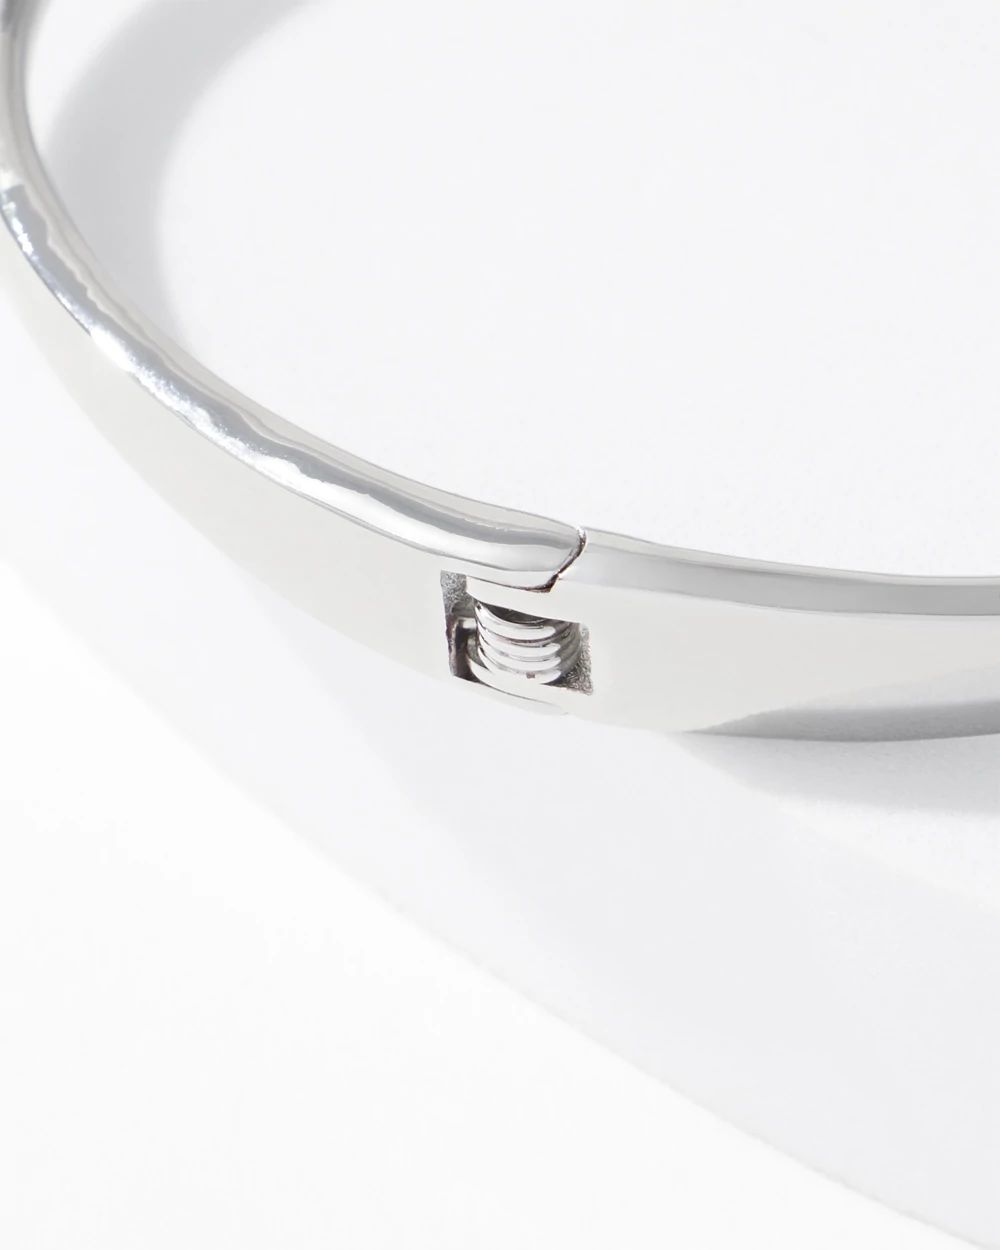 Silver Pave Overlap Hinge Bracelet